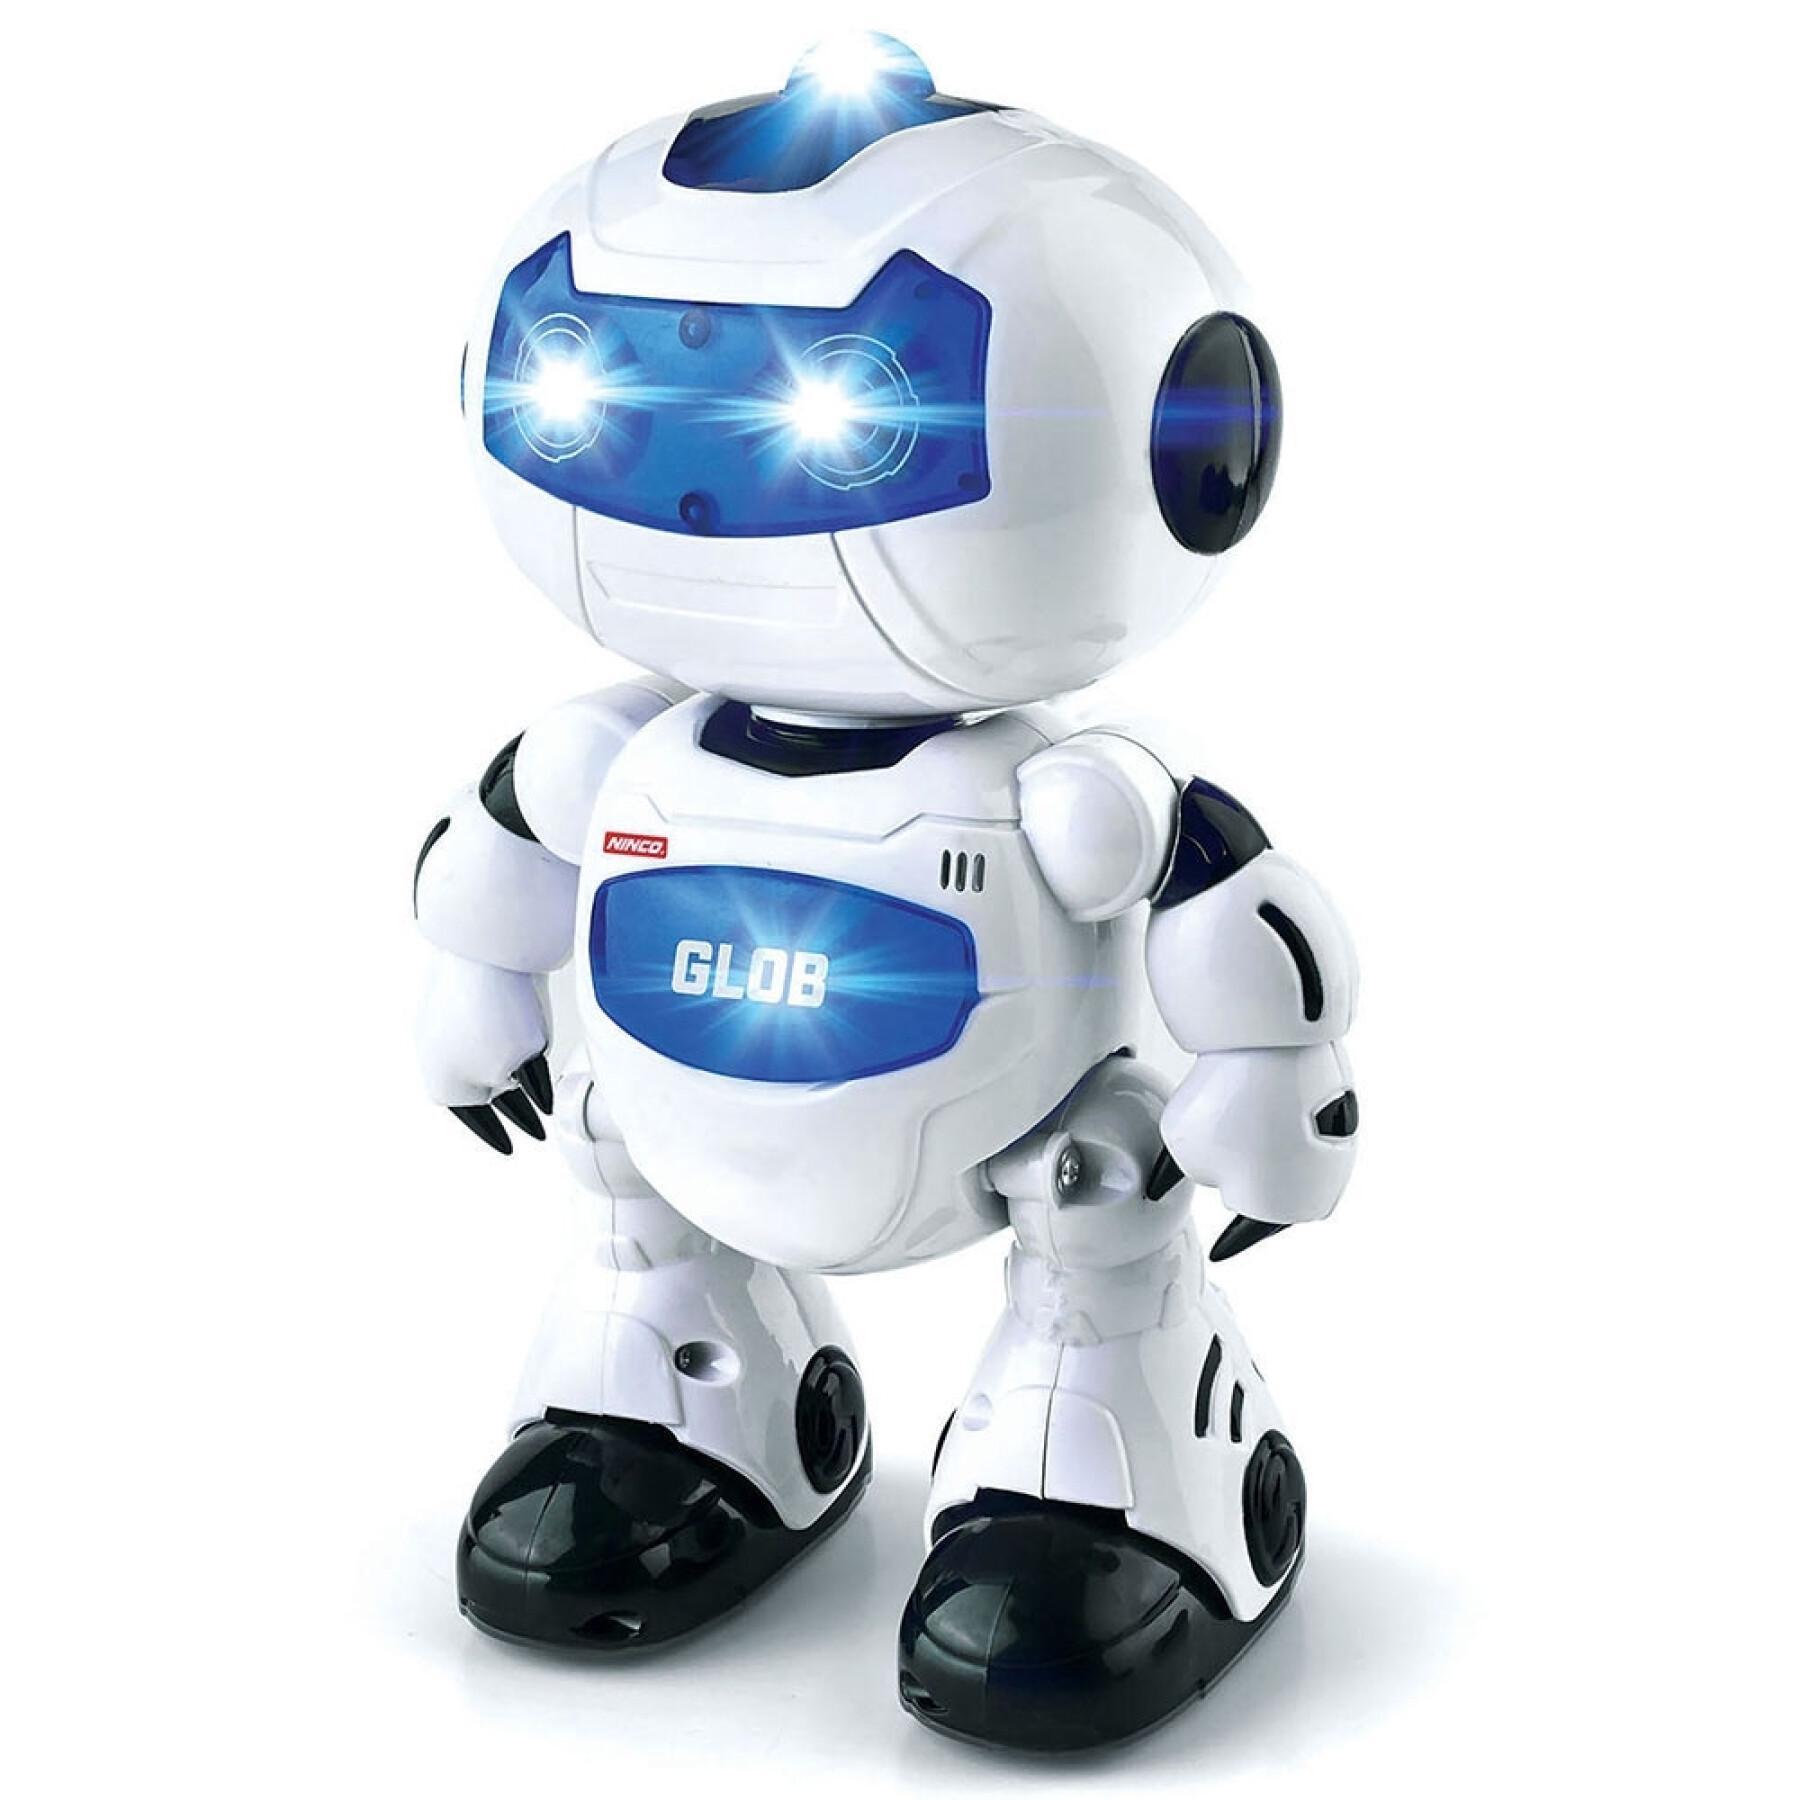 Engels sprekende robot met afstandsbediening Ninco Glob